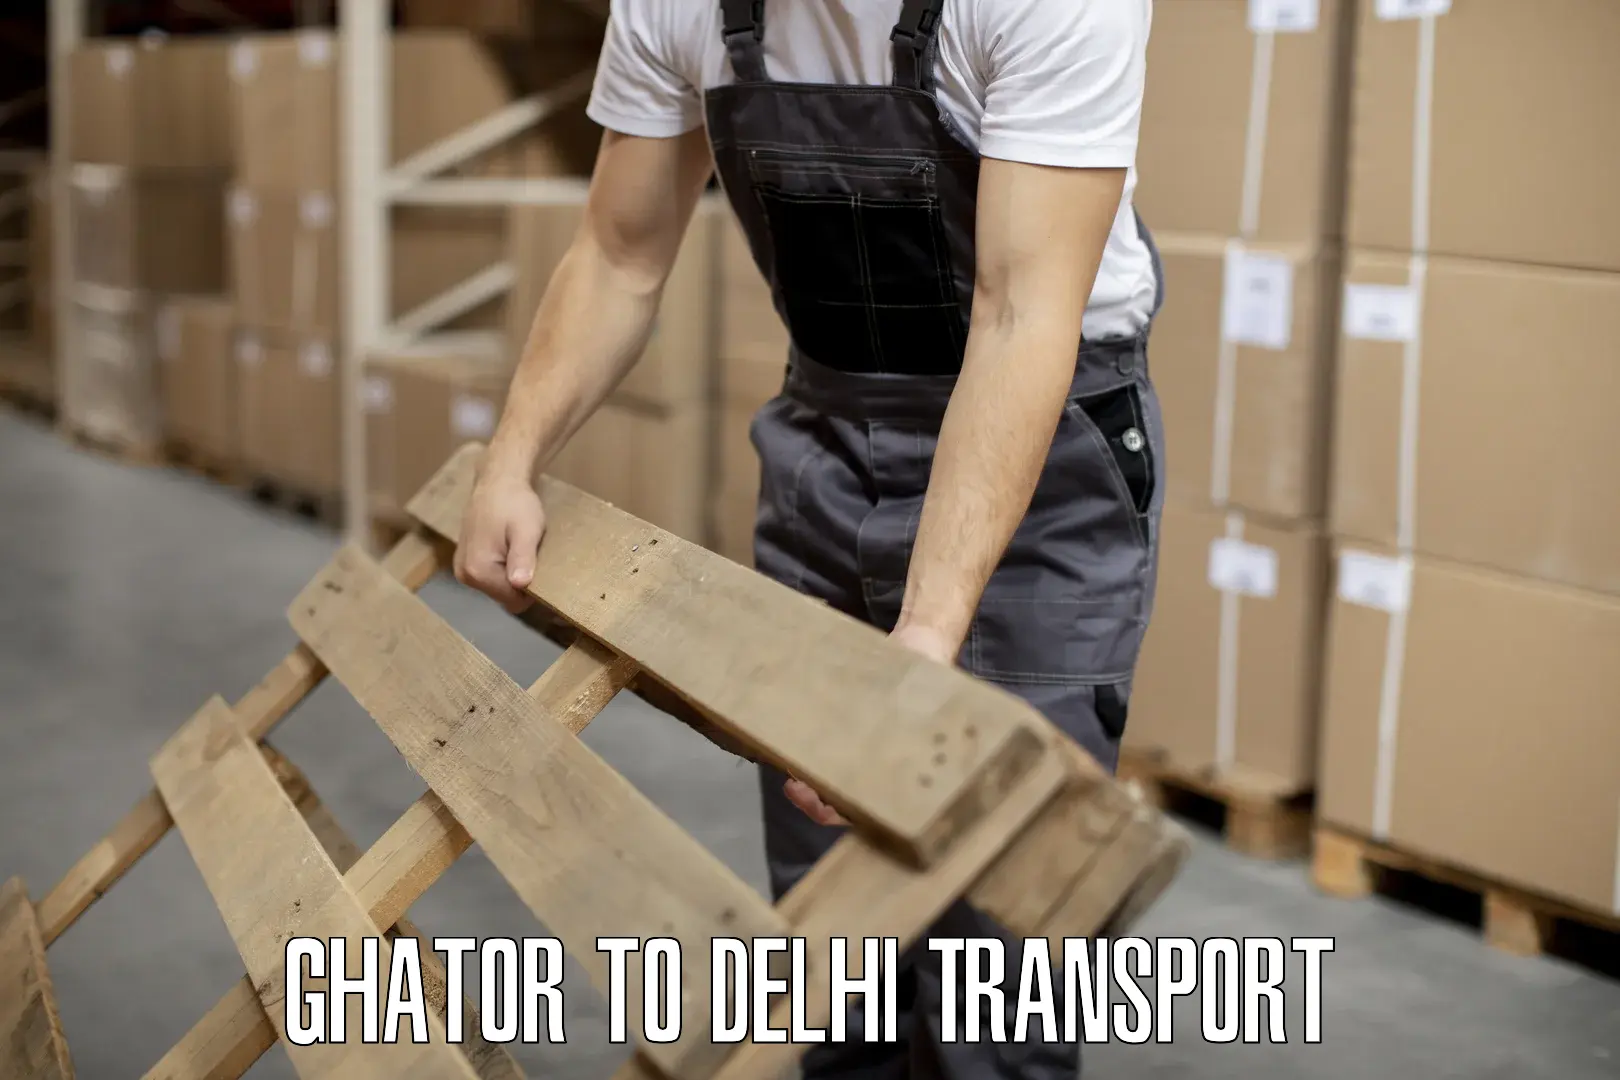 Door to door transport services Ghator to IIT Delhi